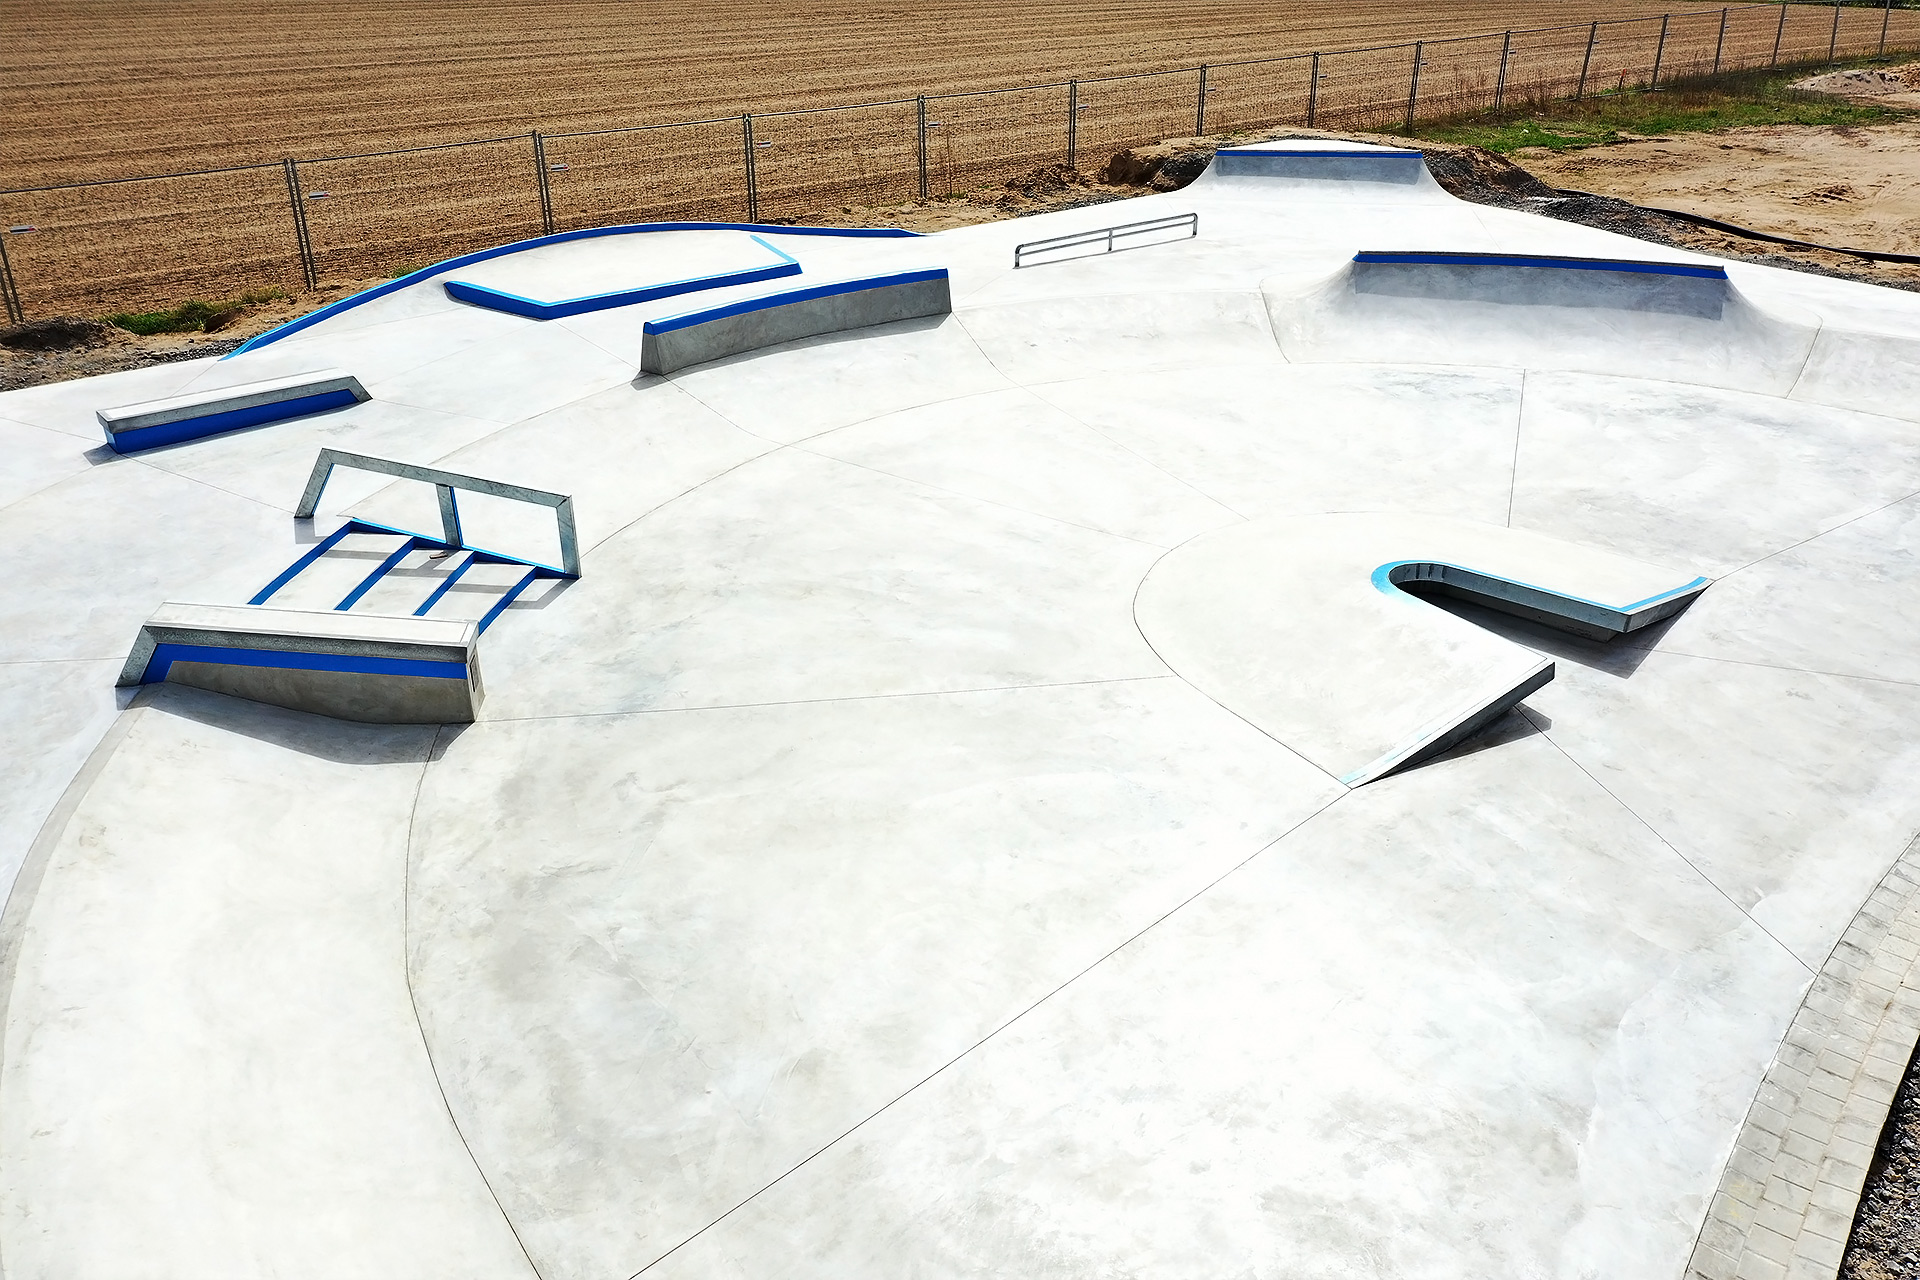 The new Sankt Leon-Rot skatepark built by Yamato Living Ramps